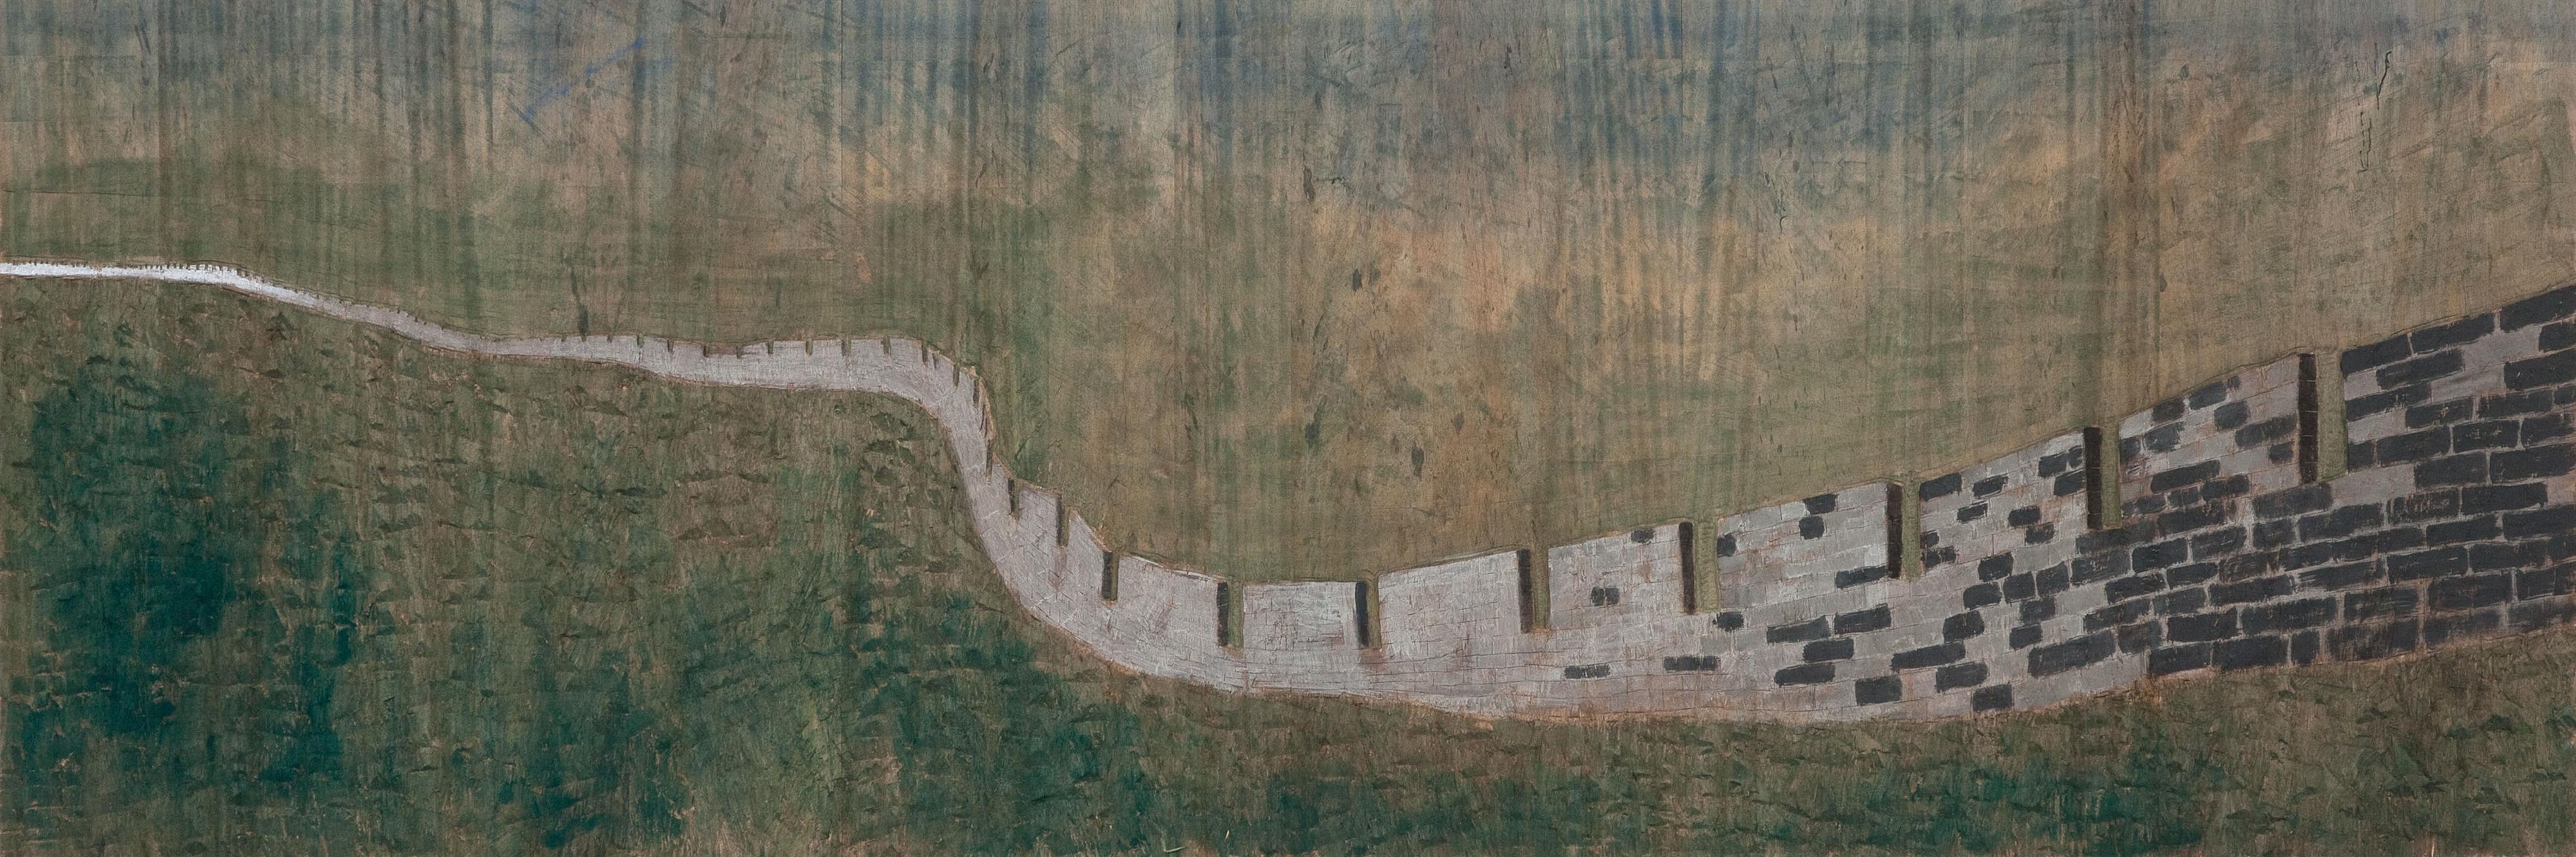 Stephan Balkenhol - Untitled (Chinese Wall) - image-2